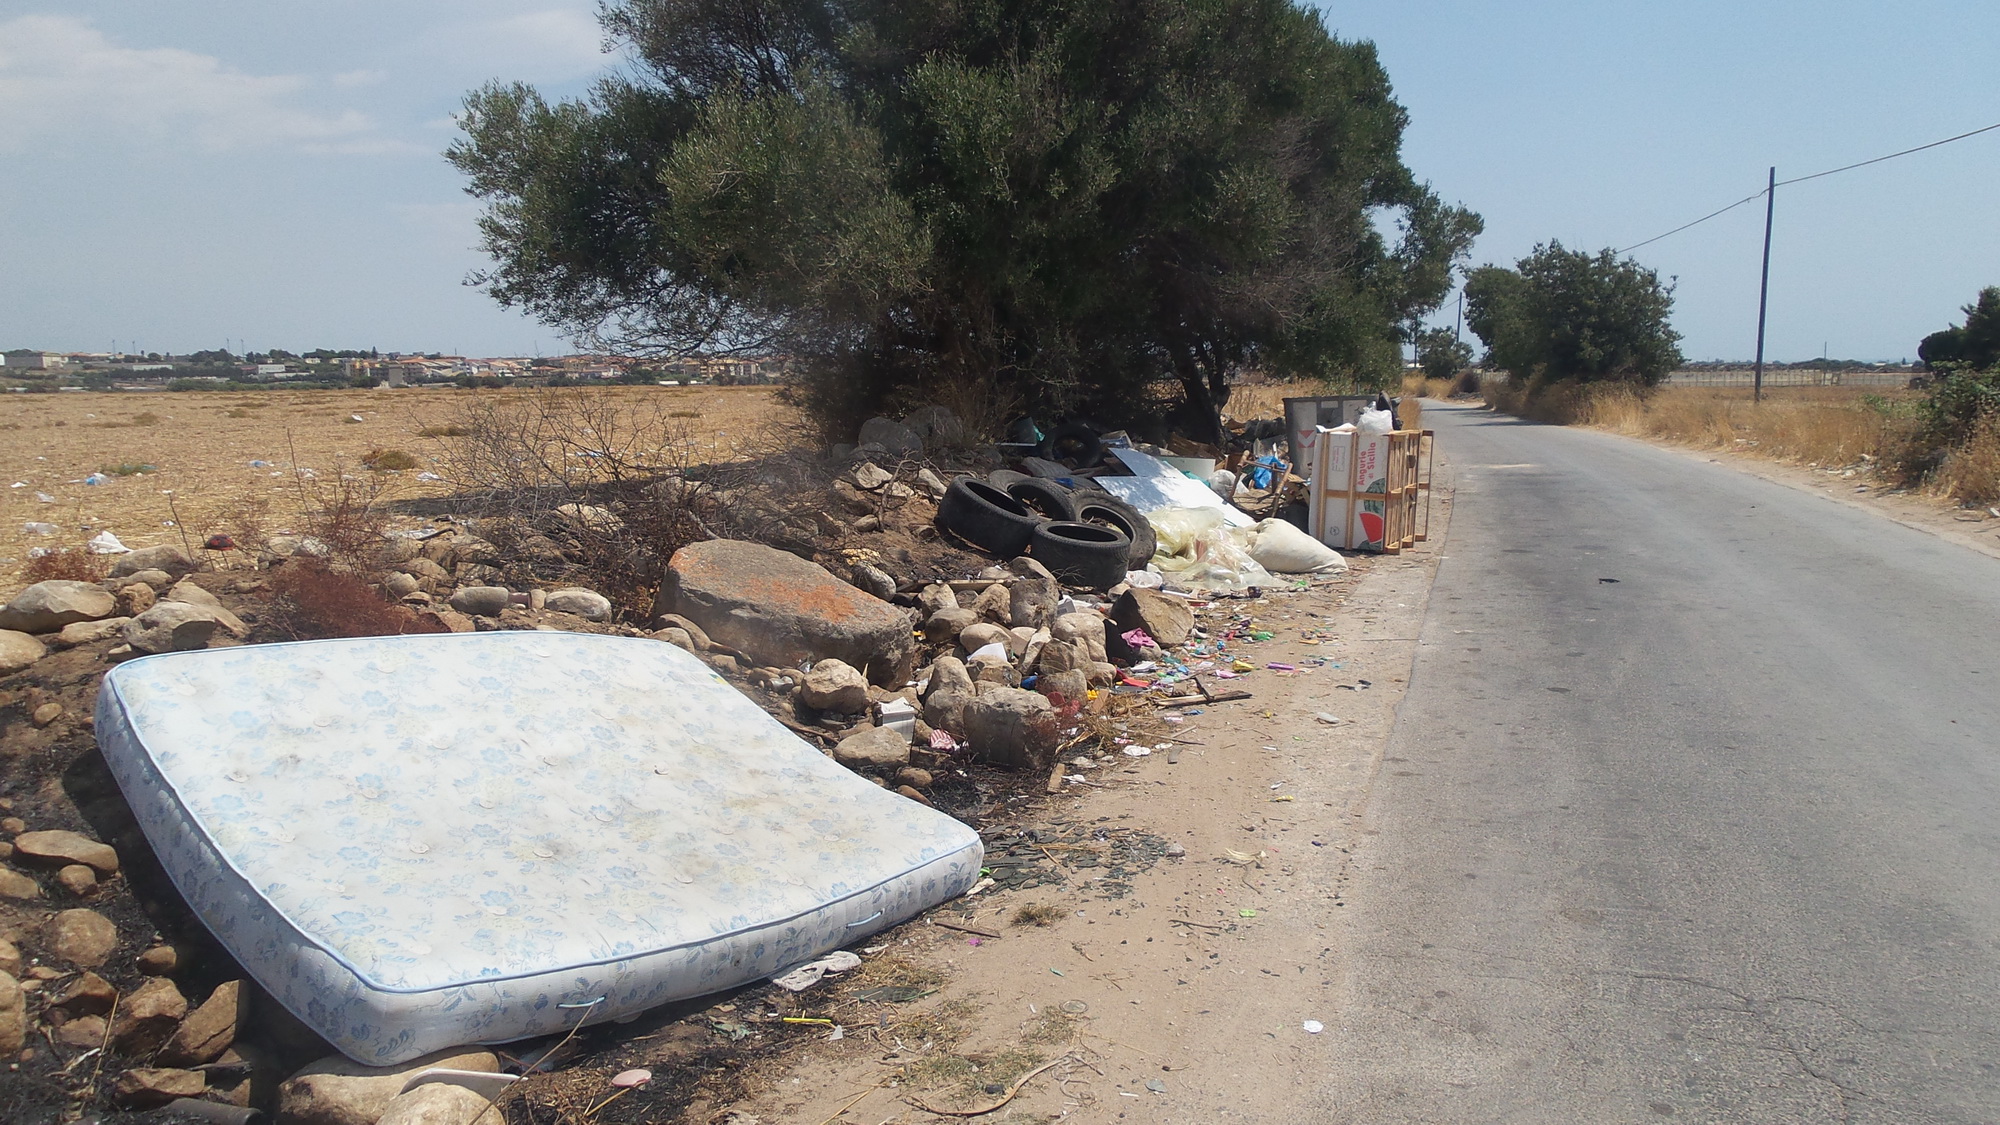  La lotta di Fare Ambiente contro l’abbandono dei rifiuti: “Troppe violazioni”